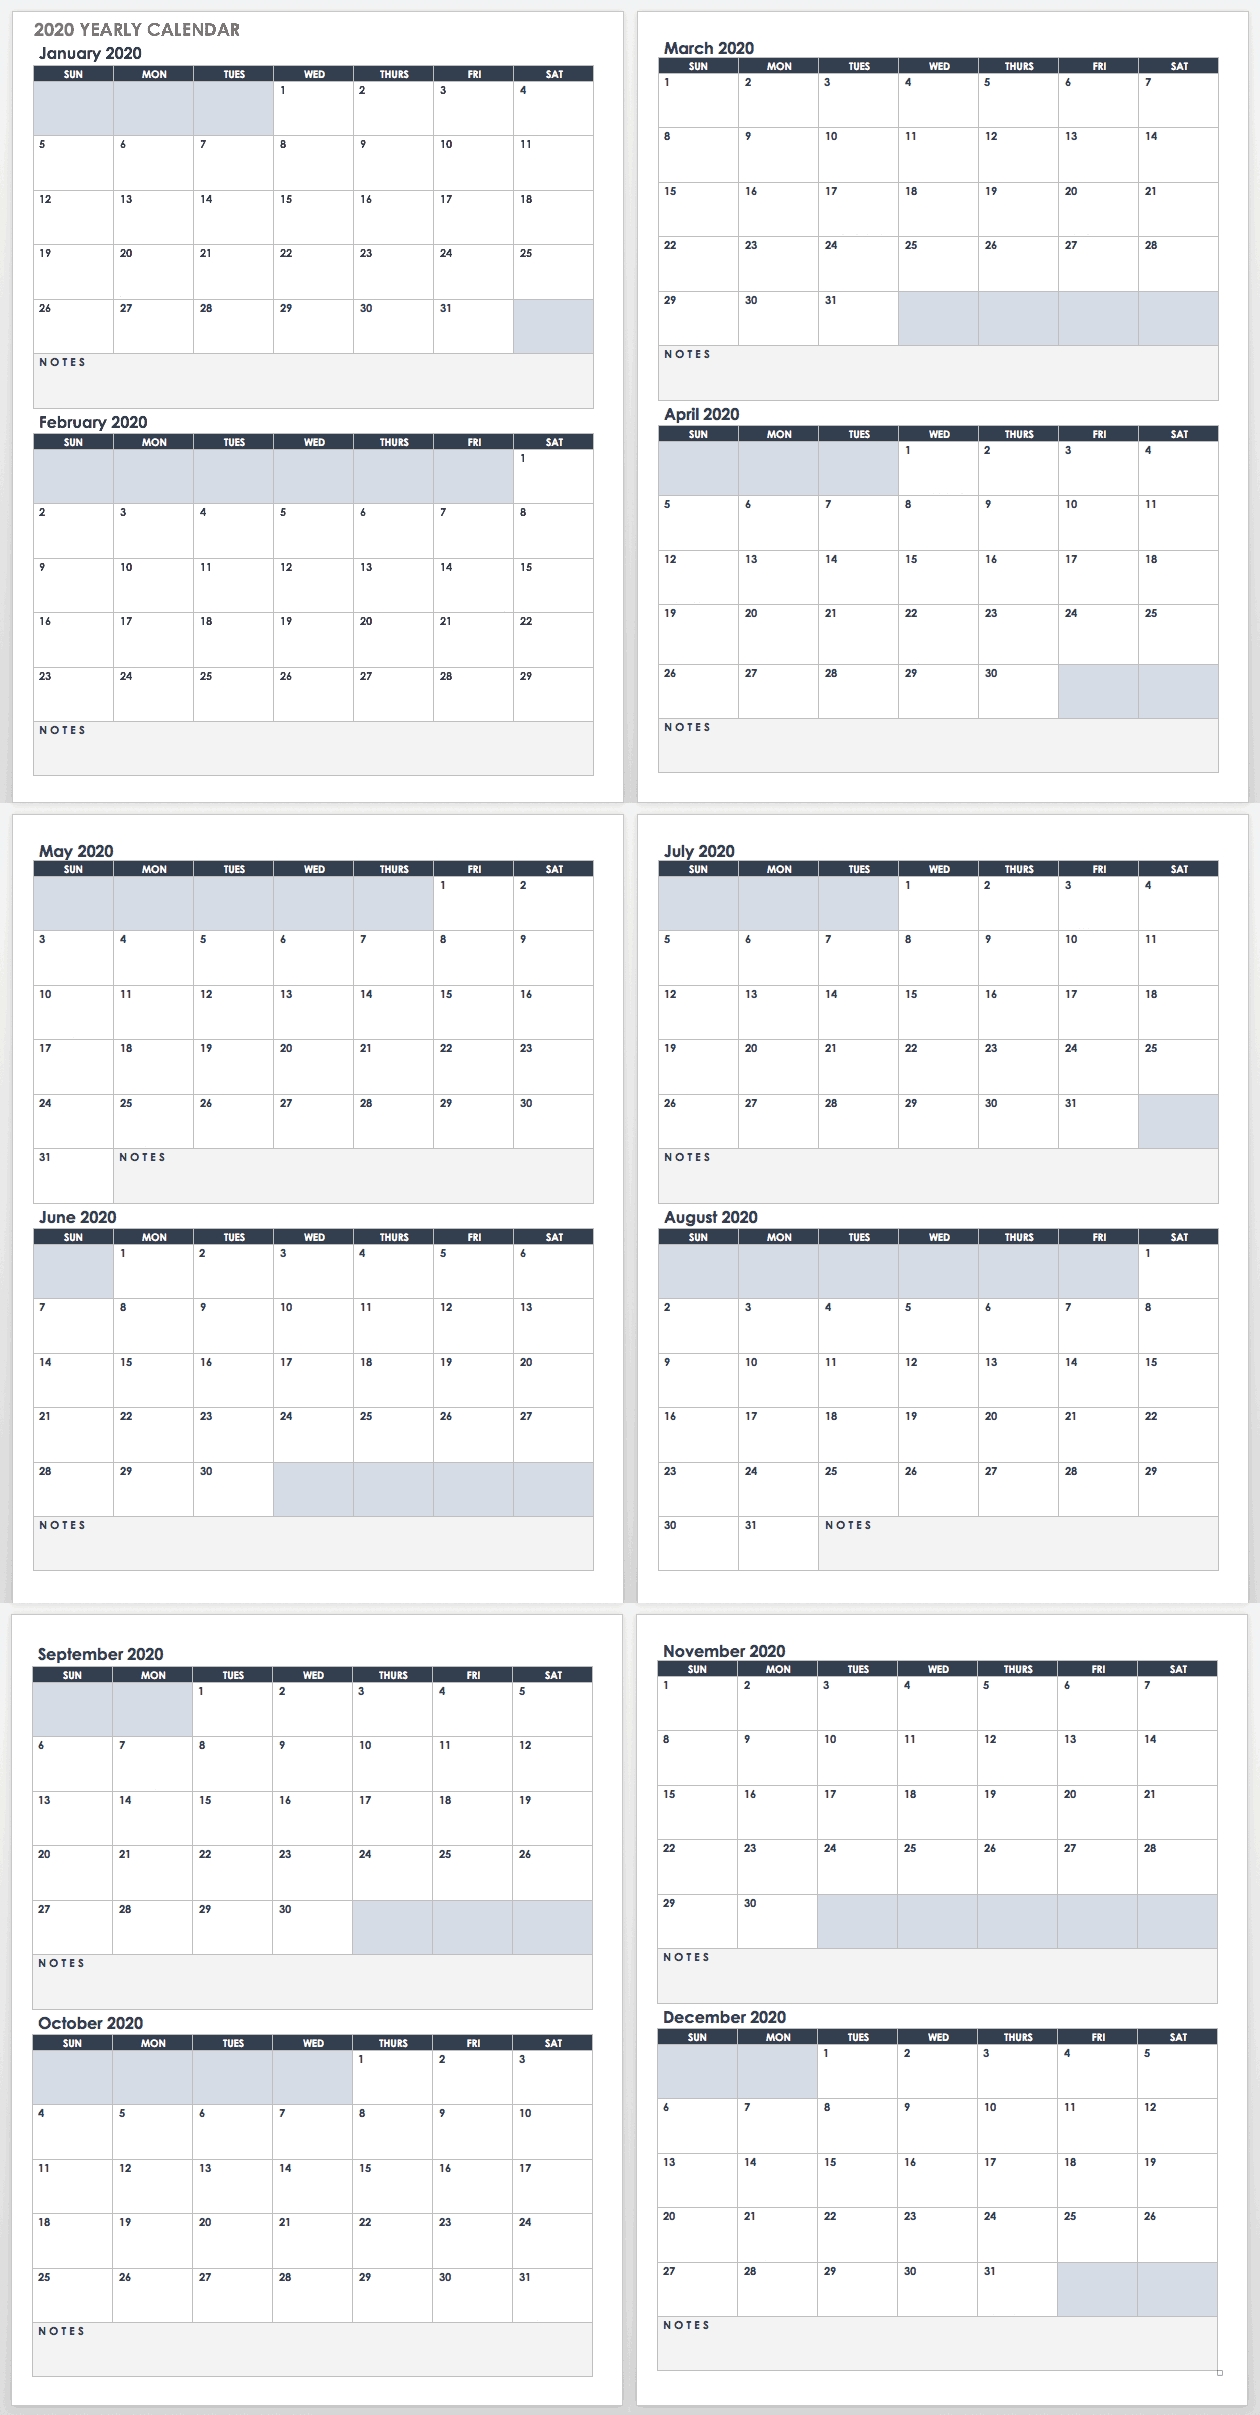 2020 Employee Attendance Calendar Free | Calendar For Planning in Printable Attendance Calendar For 2020